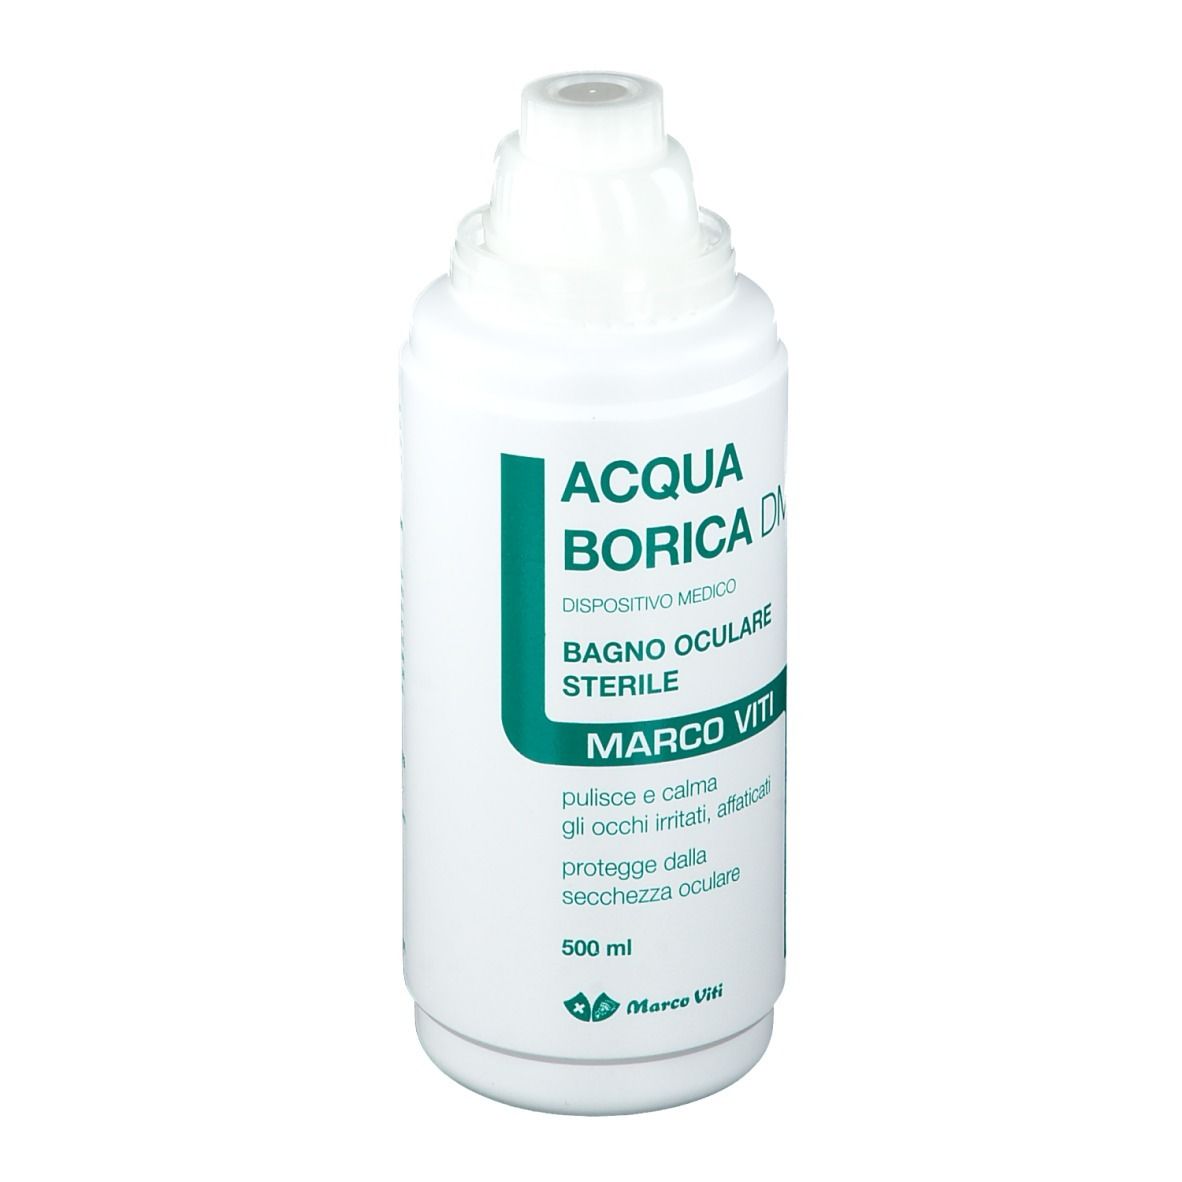 ACQUA BORICA - BAGNO OCULARE STERILE - 500 ML.